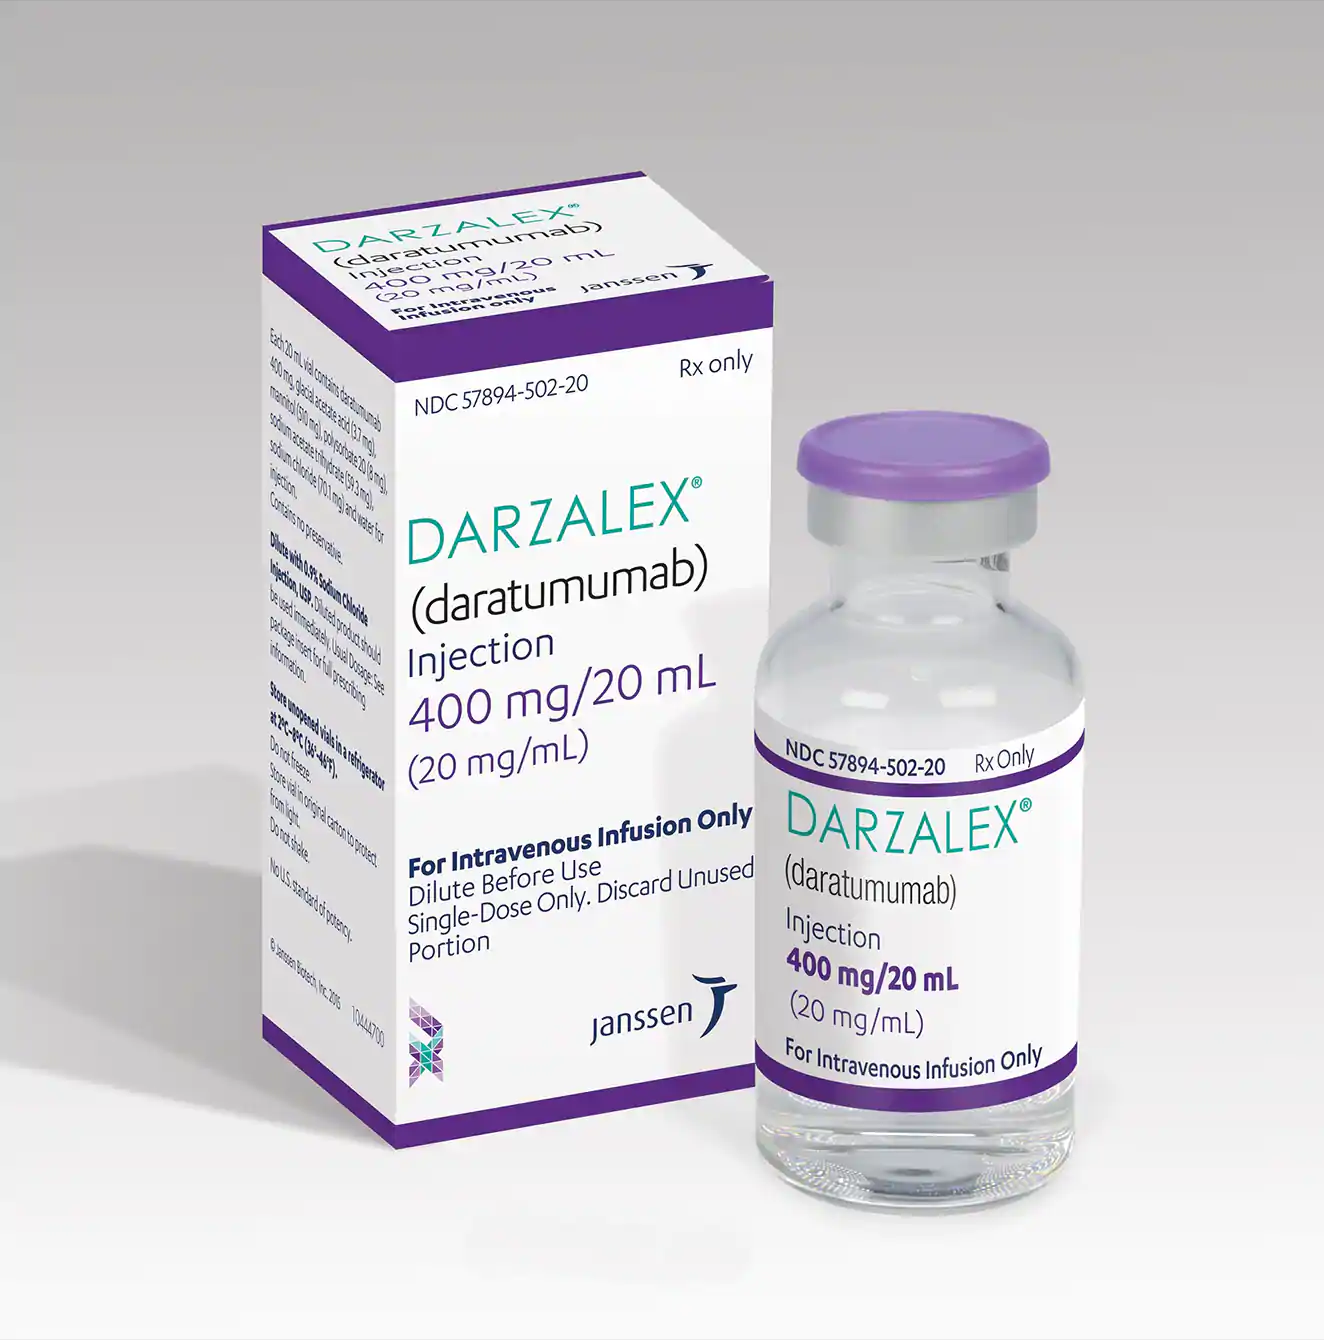 DARZALEX（达雷木单抗）适用于治疗既往接受过至少三种治疗的多发性骨髓瘤患者吗？_香港济民药业